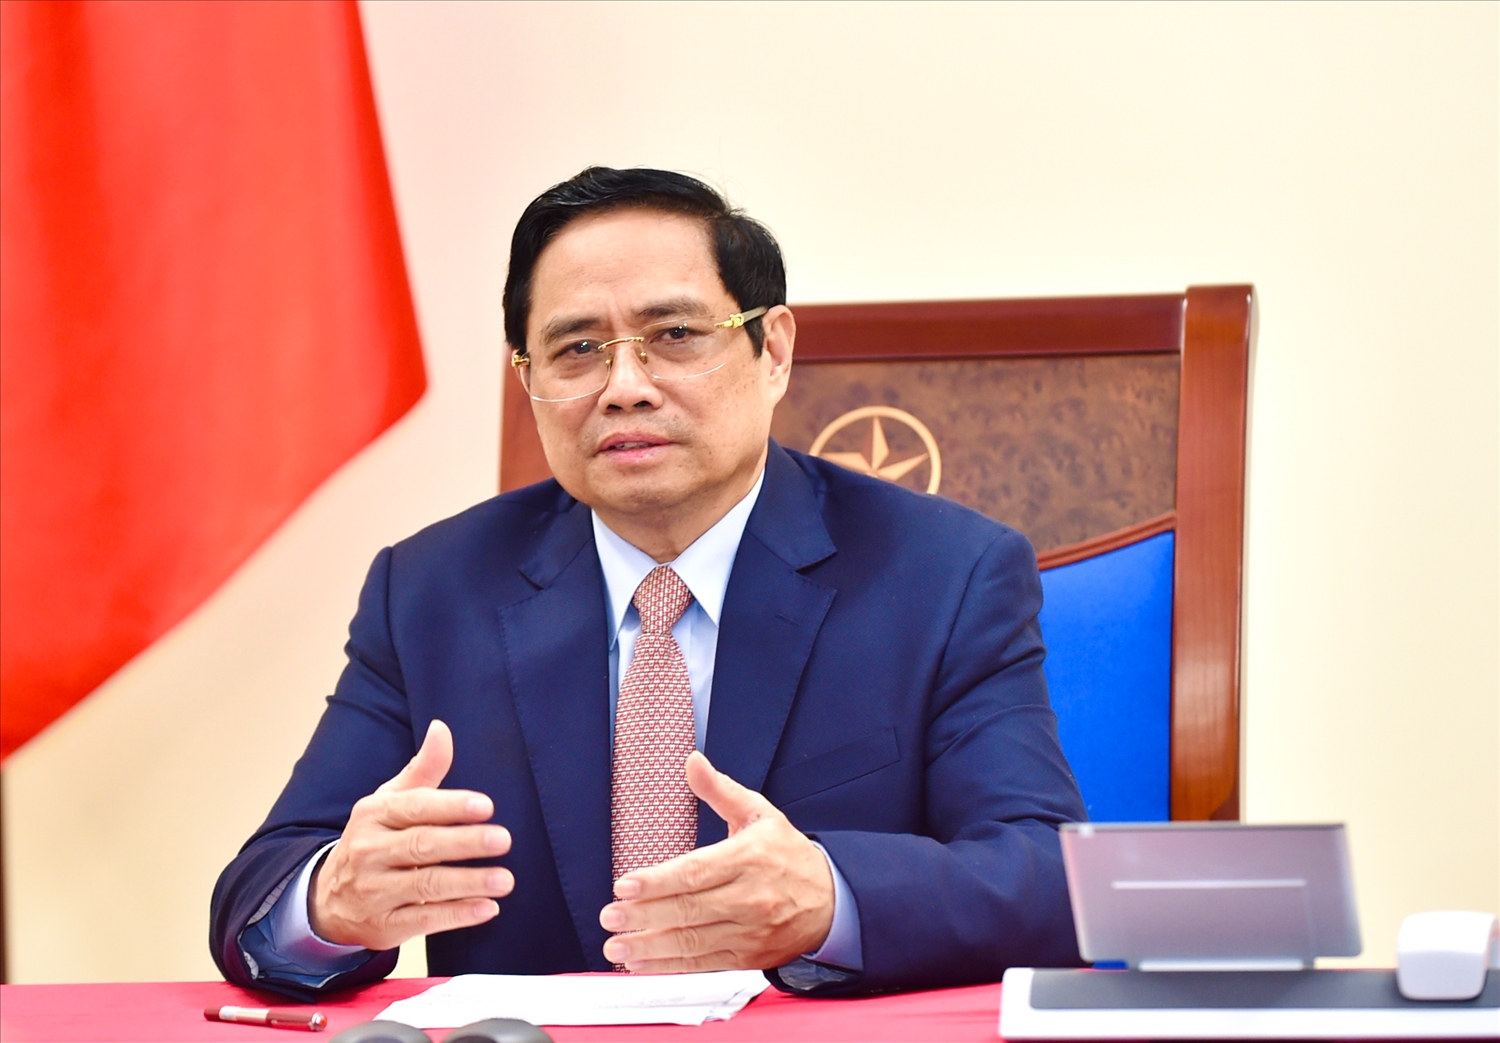 Thủ tướng Chính phủ Phạm Minh Chính nhấn mạnh Việt Nam và Ấn Độ có những mối liên kết và gắn bó từ lâu đời, được các thế hệ lãnh đạo và nhân dân hai nước dày công vun đắp và đang ngày càng phát triển tốt đẹp, hiệu quả. Ảnh: VGP/Nhật Bắc